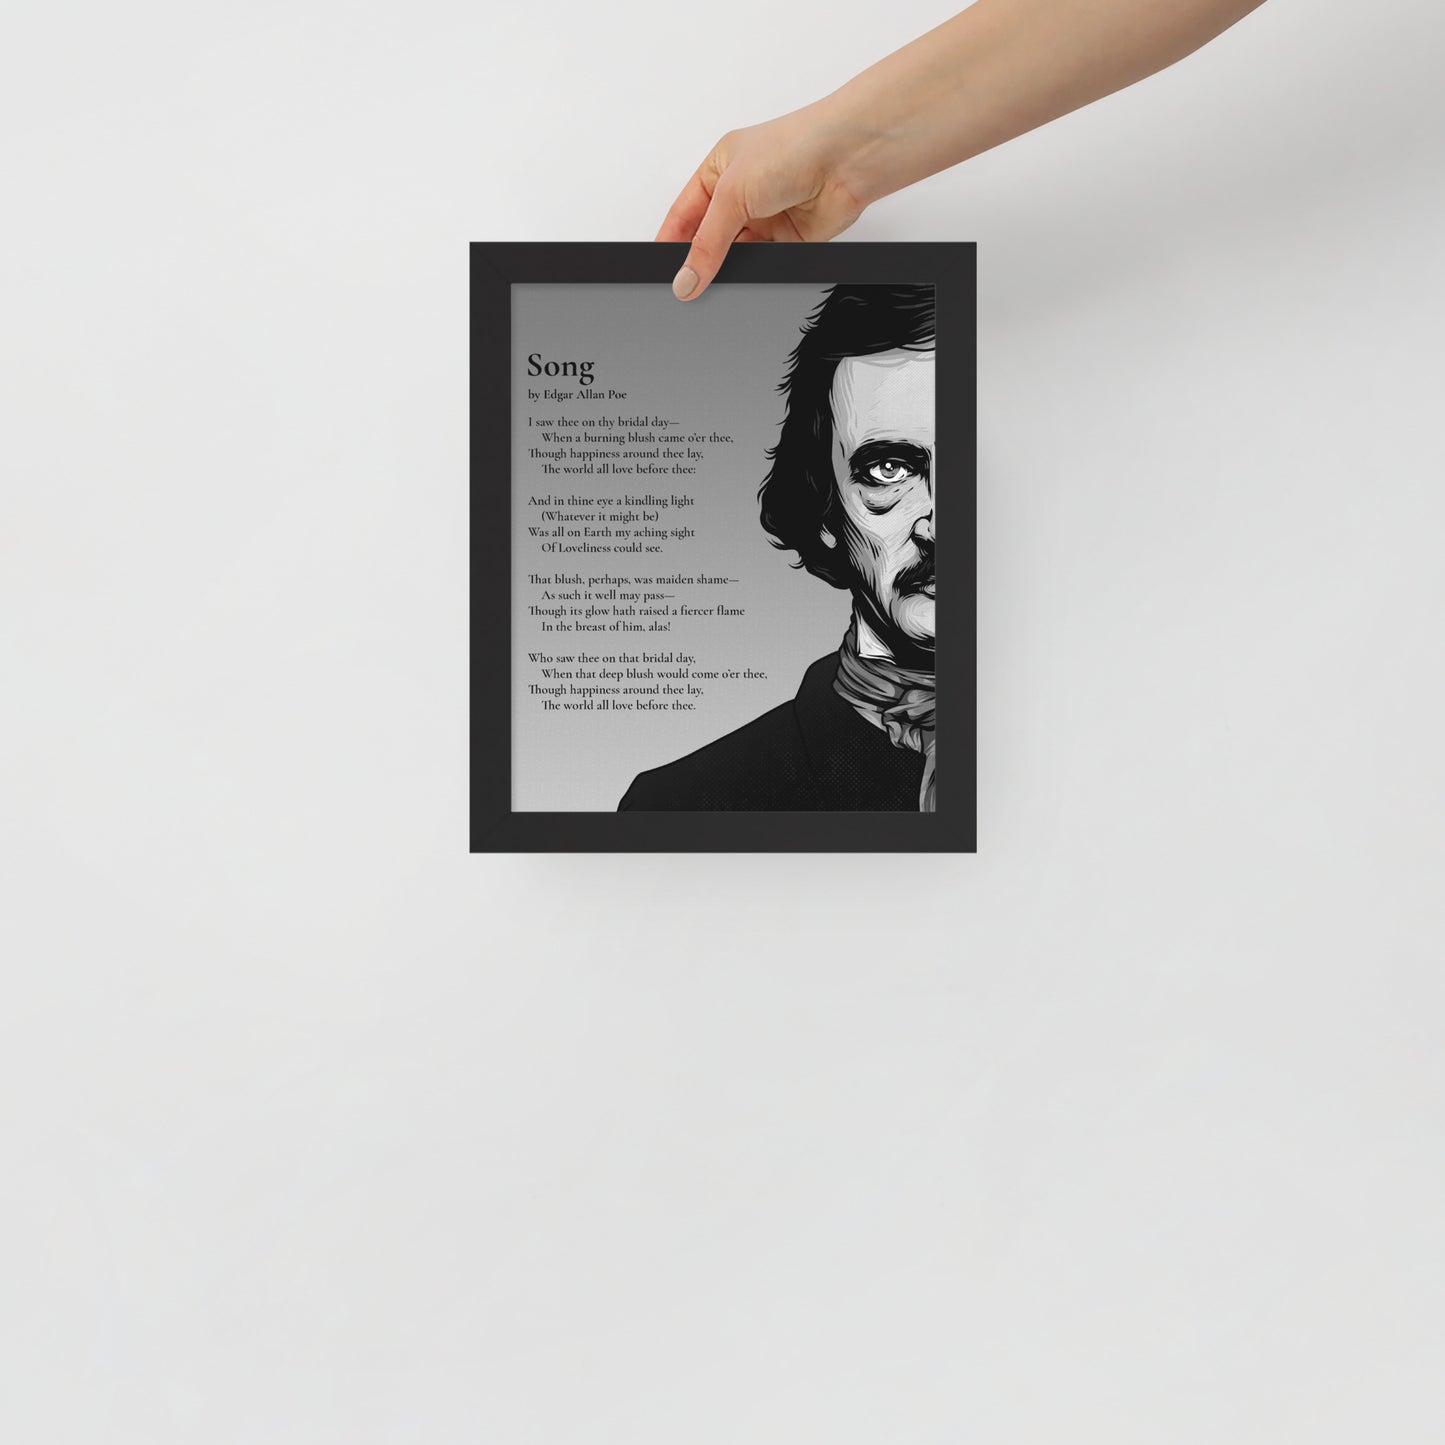 Edgar Allan Poe's 'Song' Framed Matted Poster - 8 x 10 Black Frame